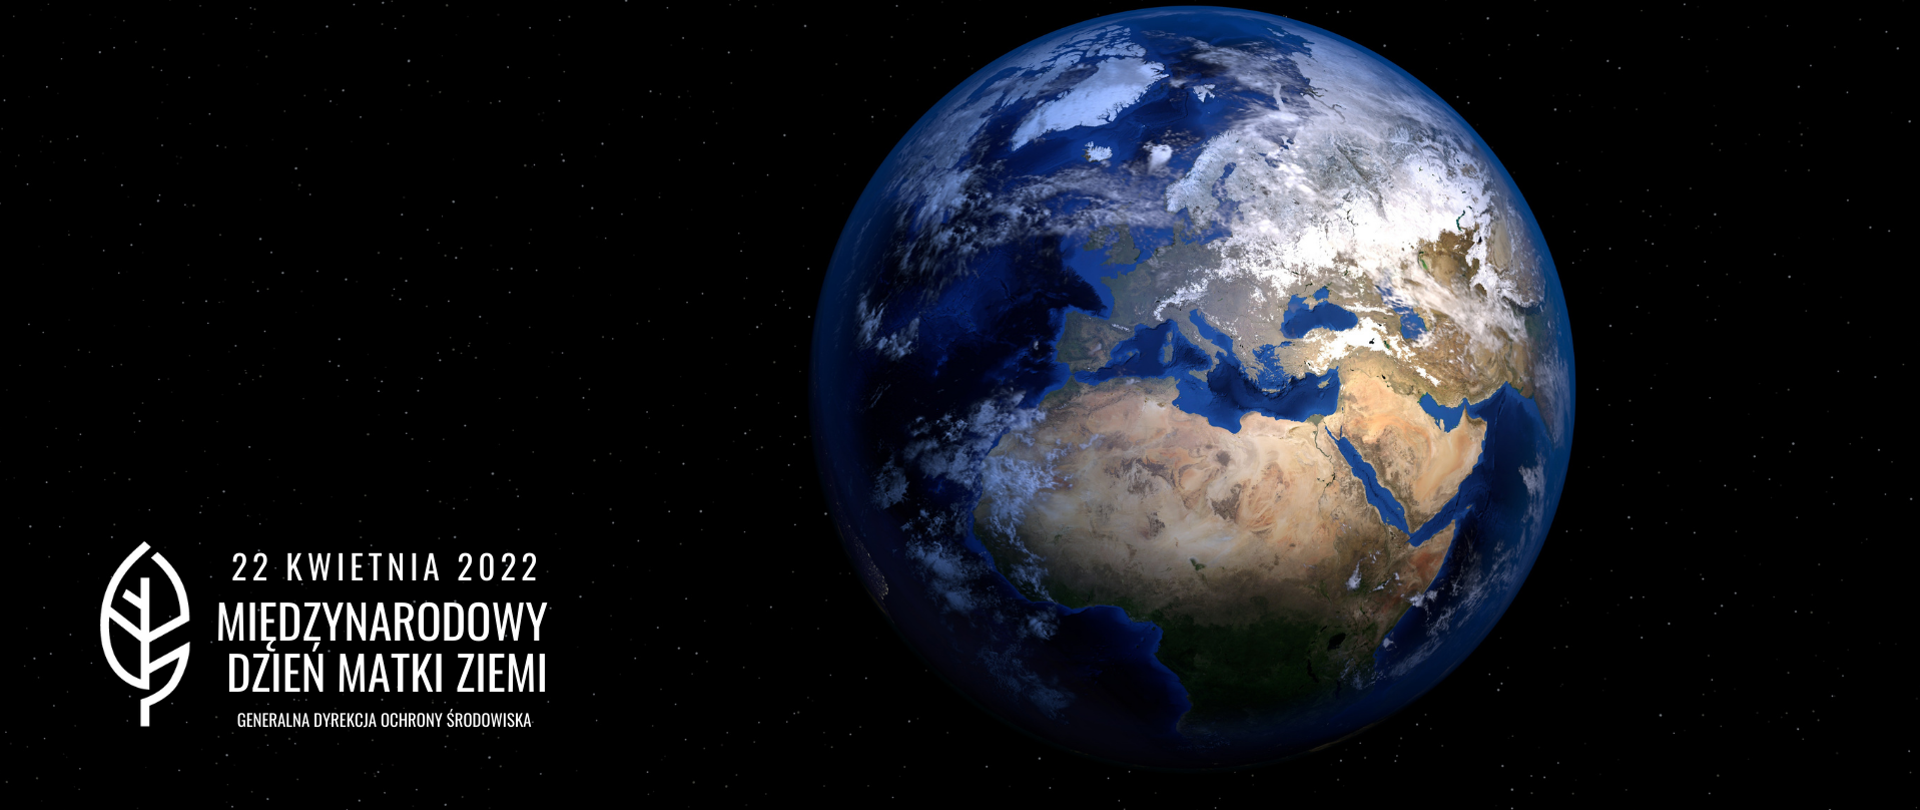 Czarne tło. Na środku kula, ziemska . Widoczne żółte lądy i niebieska woda. W prawym dolnym rogu napis 22 kwietnia 2022 Międzynarodowy Dzień Matki Ziemi i logo Generalnej Dyrekcji Ochrony Środowiska (biały liść)